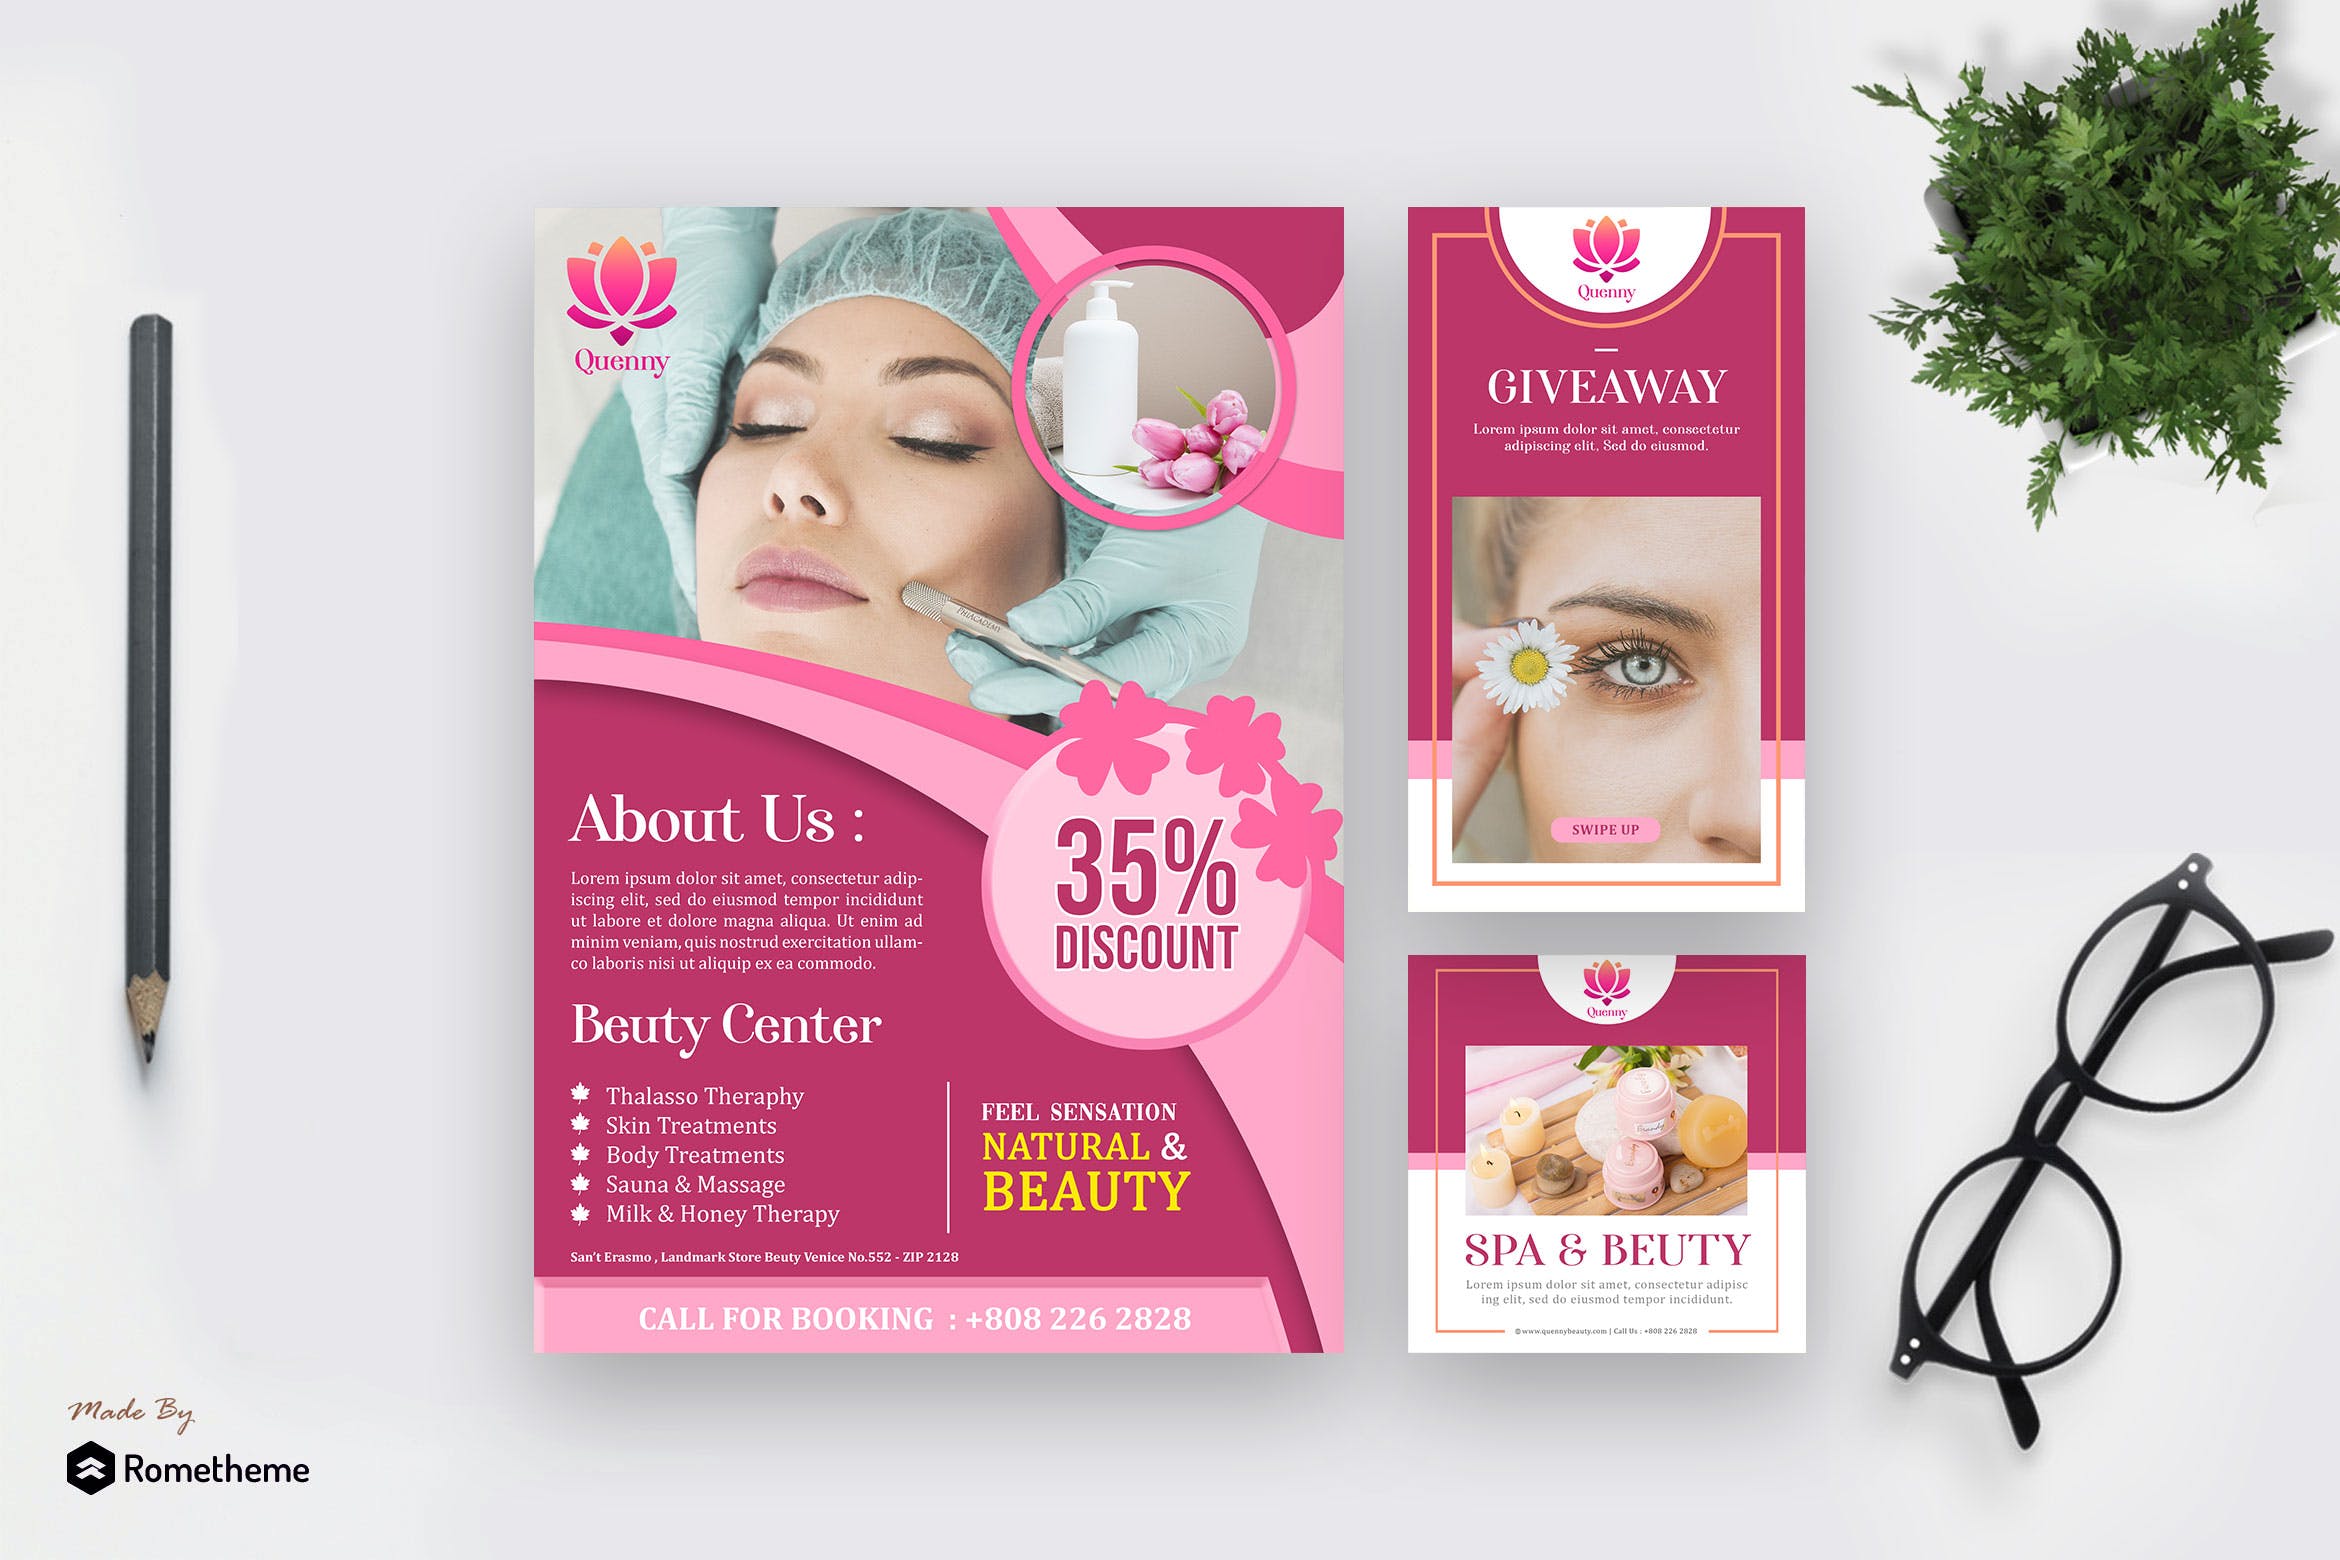 美容SPA会所宣传材料设计素材 Quenny – Spa and Beauty Template Pack插图